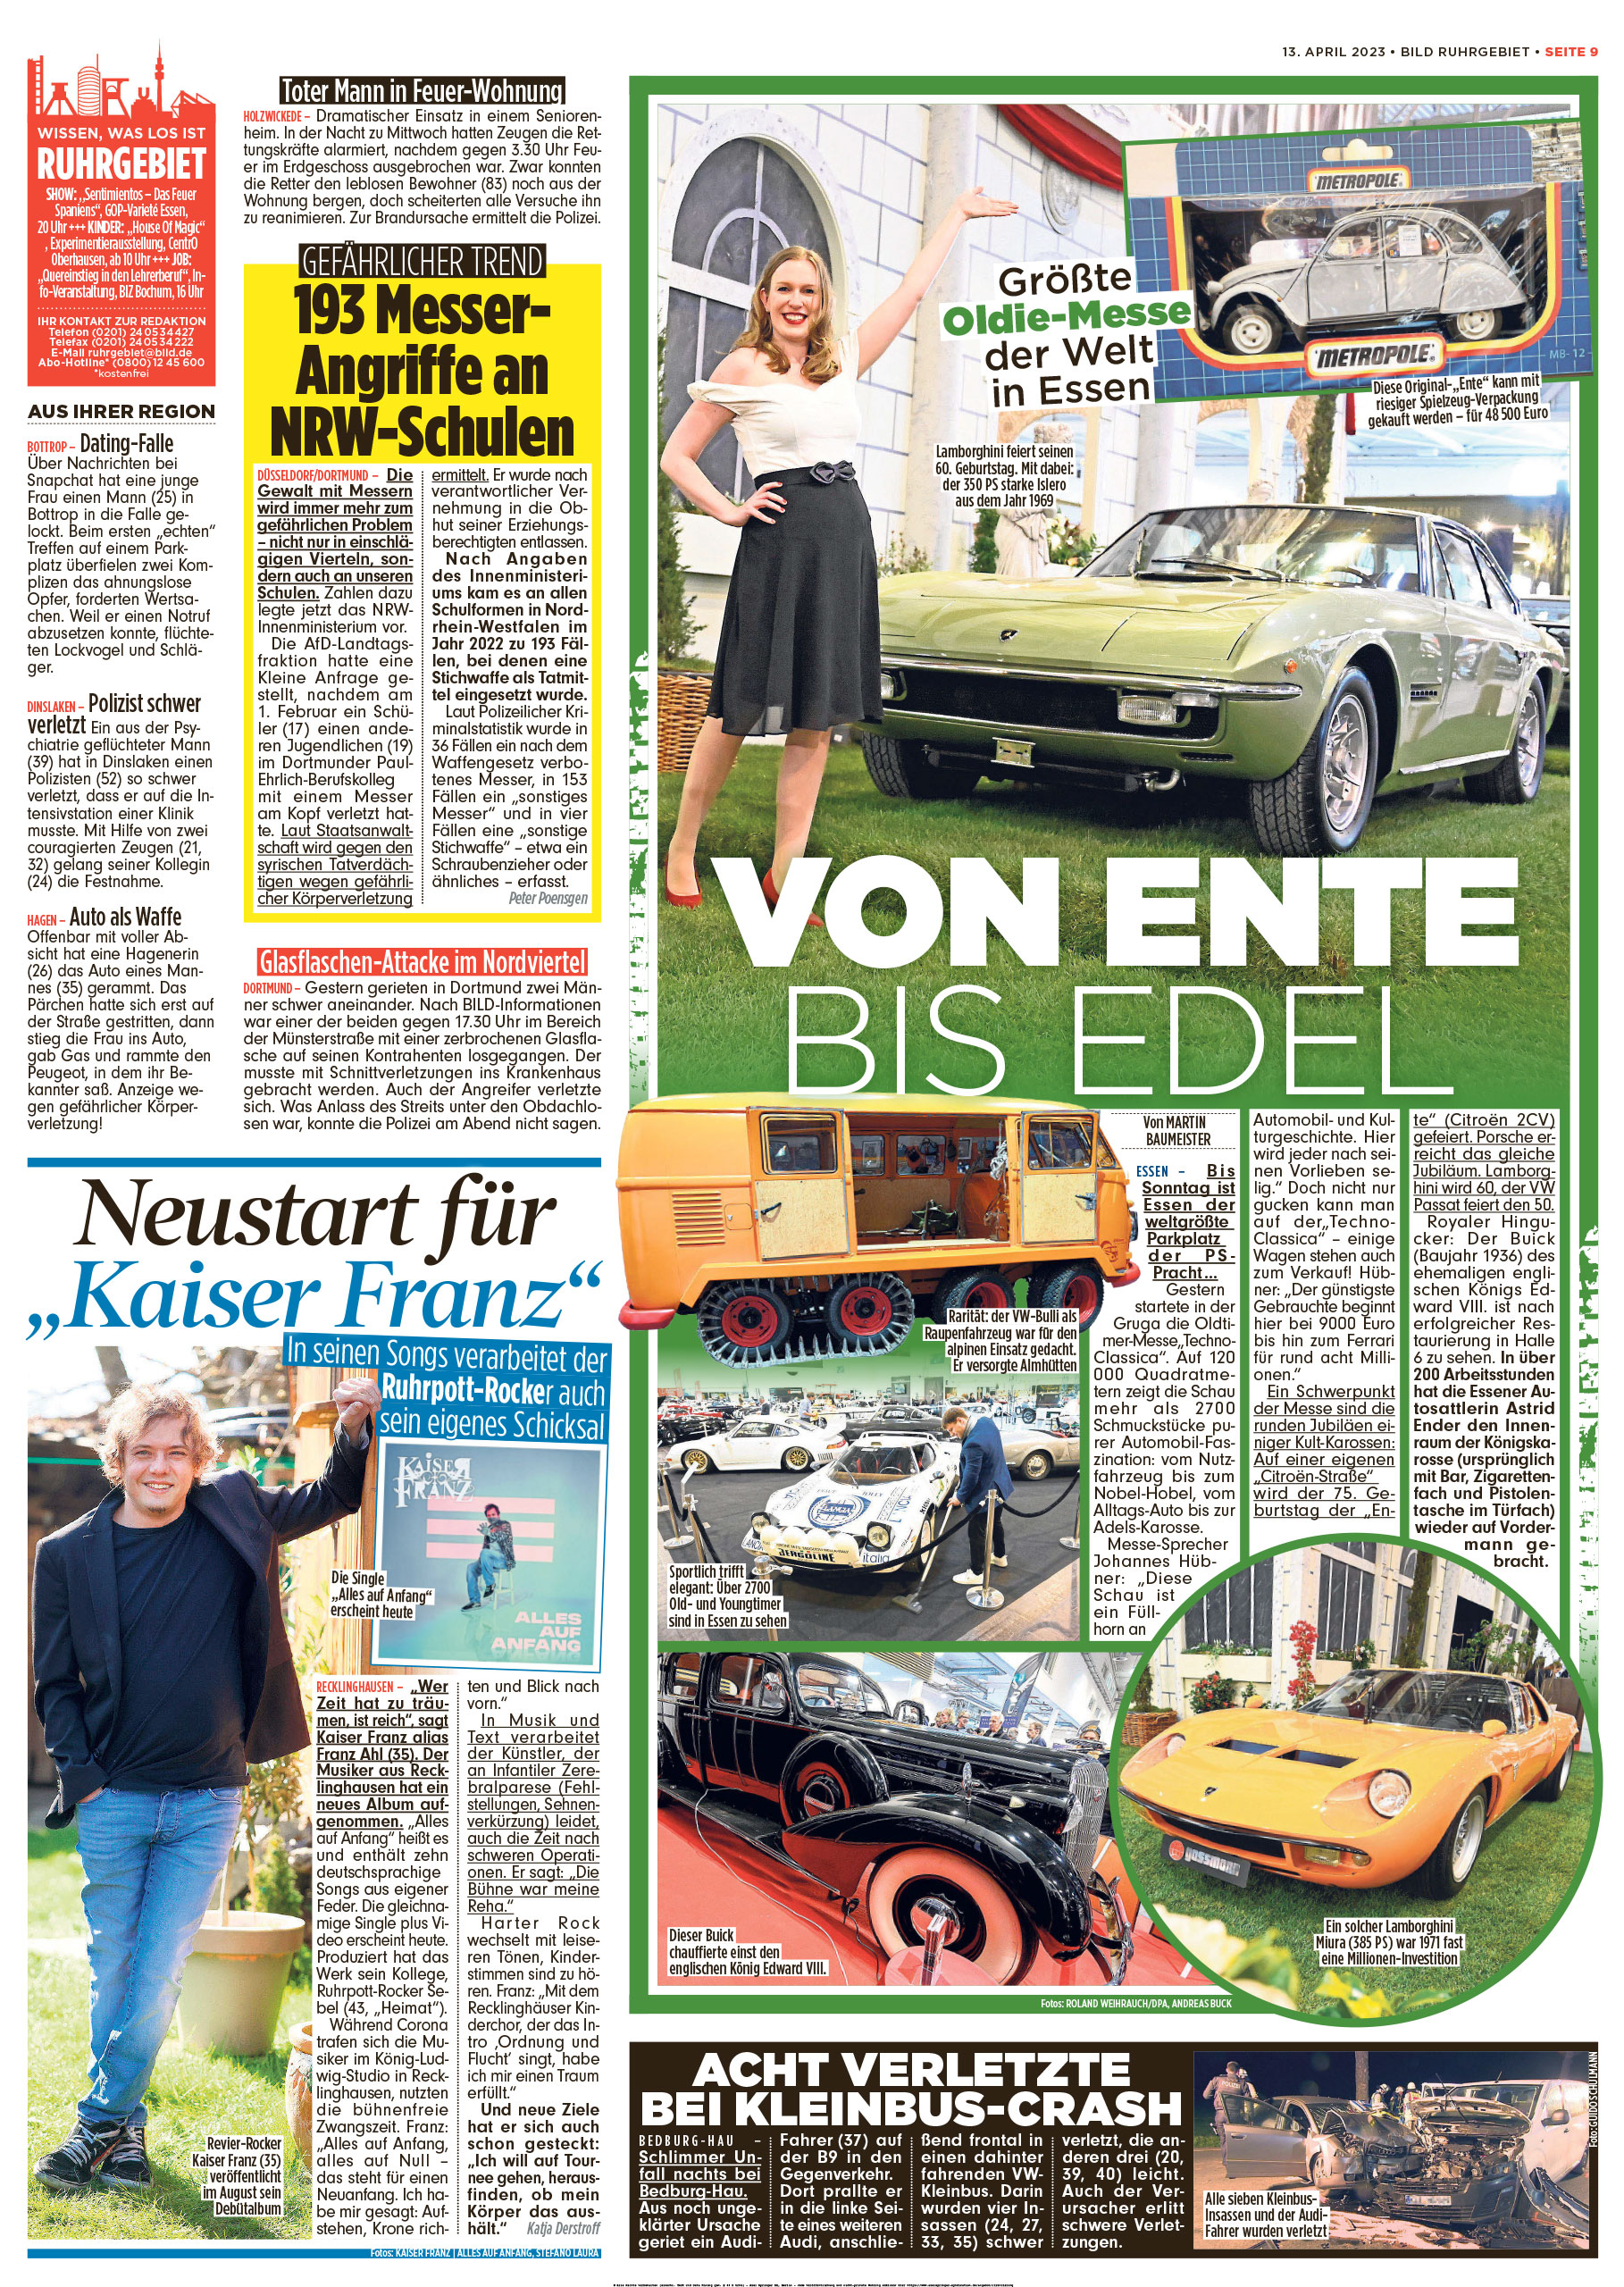 Autosattlerei-Masto-Bildzeitung-13.4.2023 zur Techno-Classica